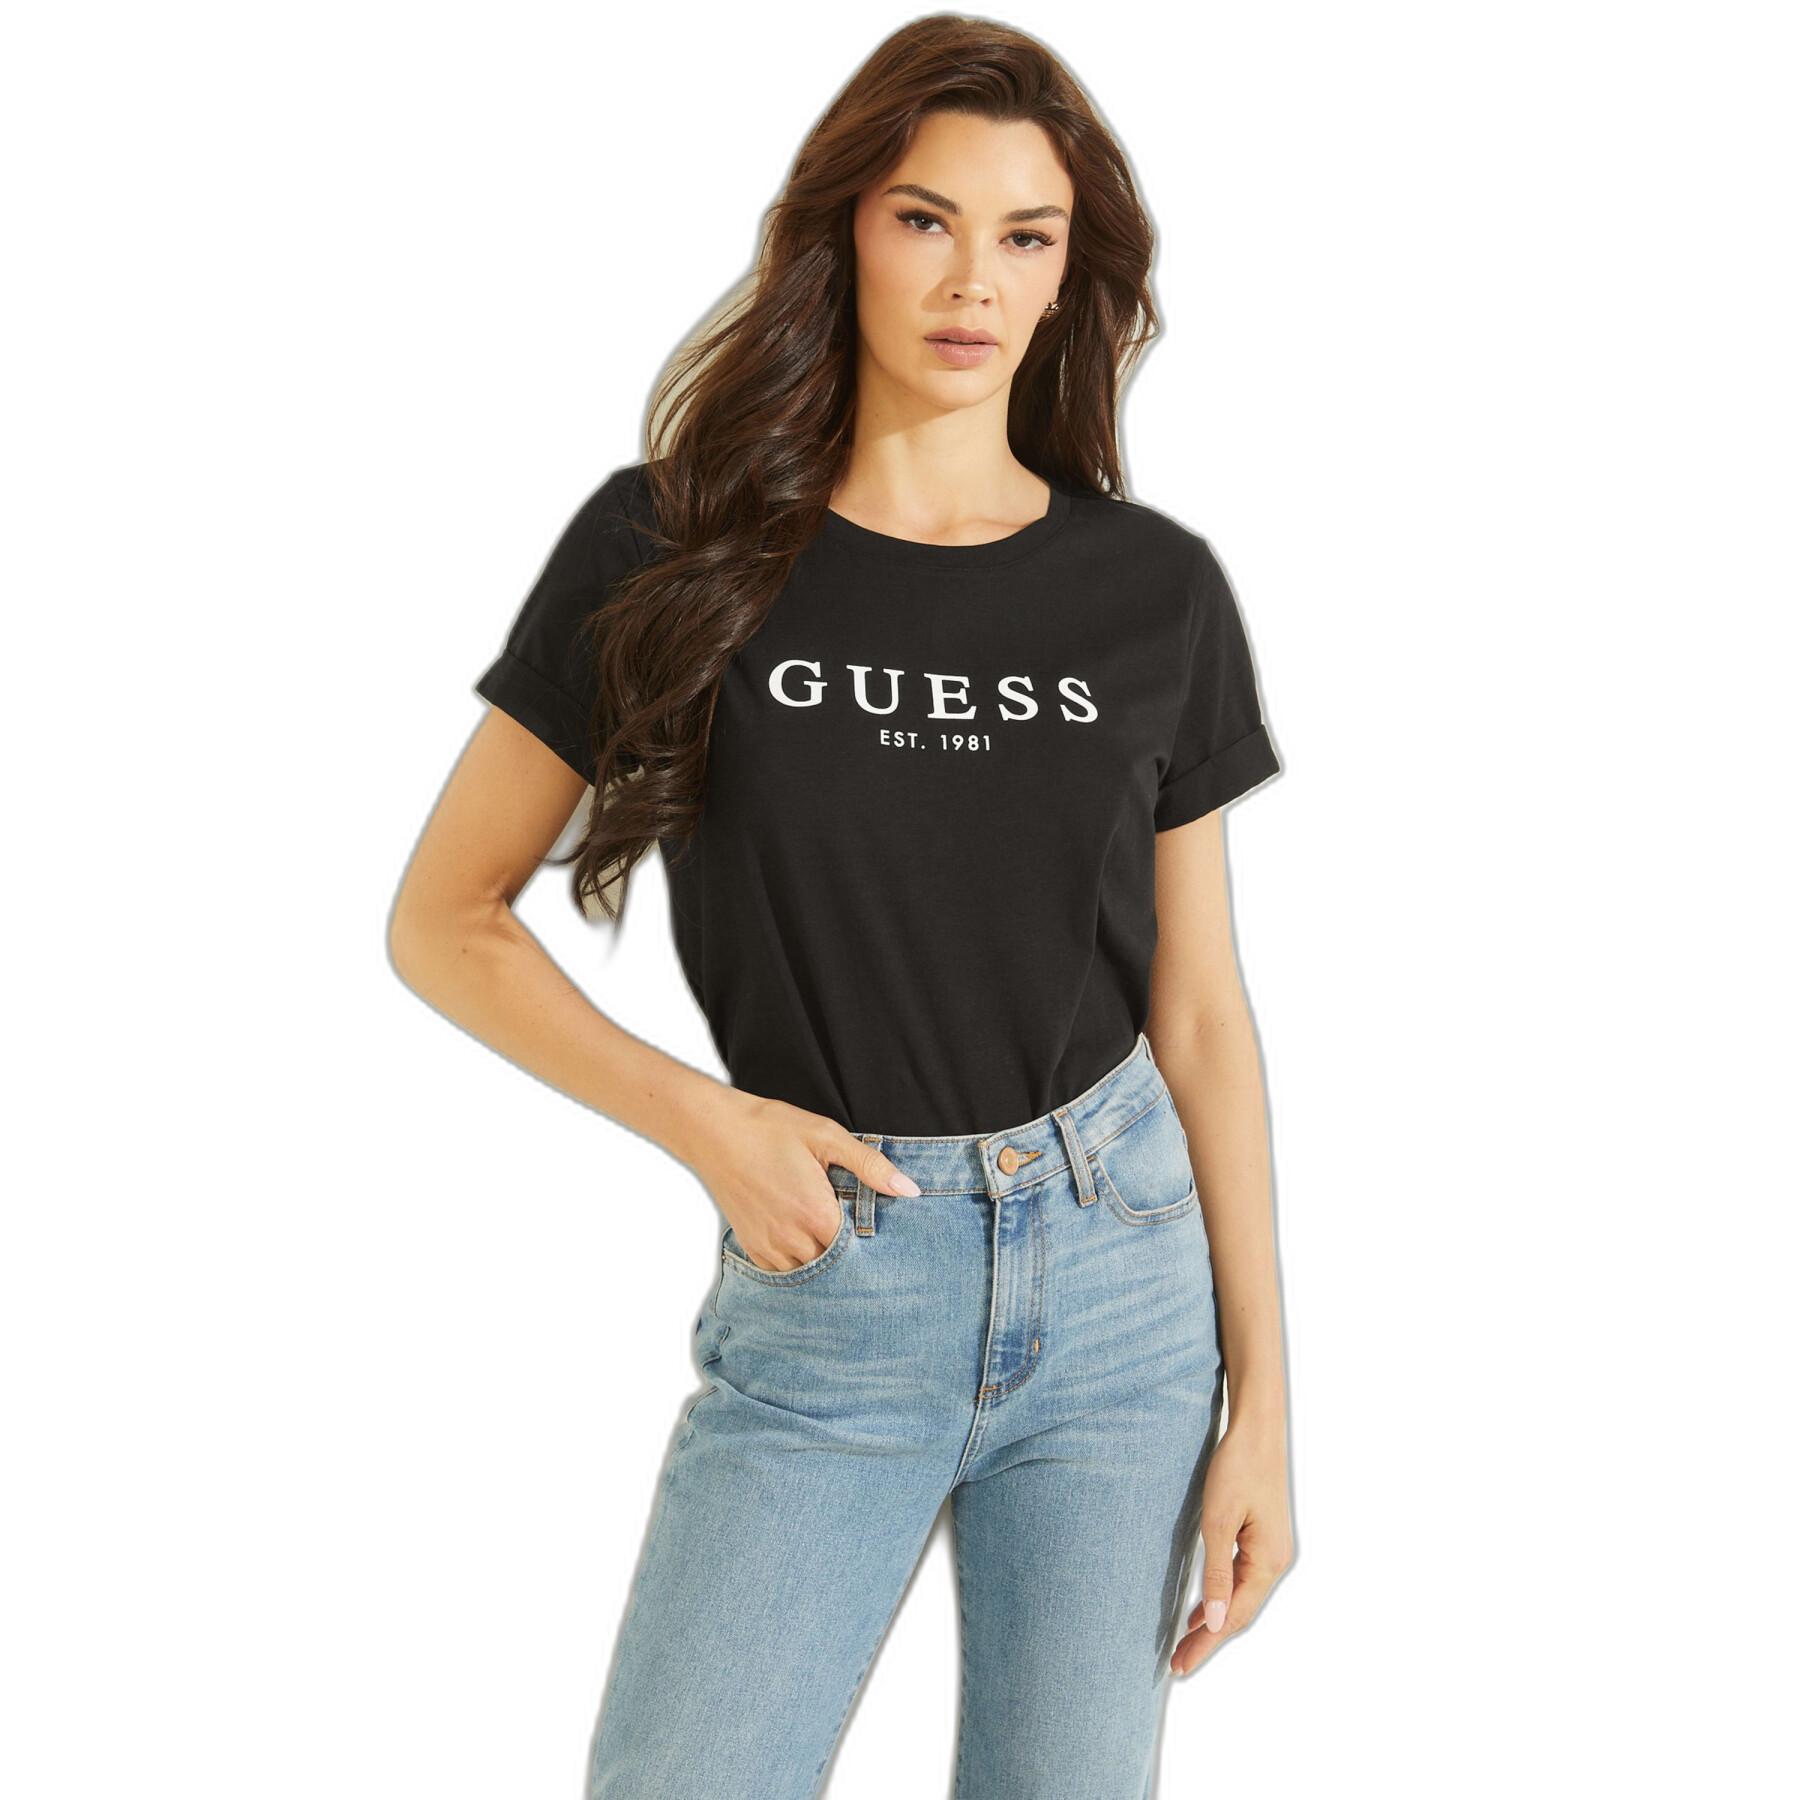 T-shirt de mulher Guess ES 1981 Roll Cuff